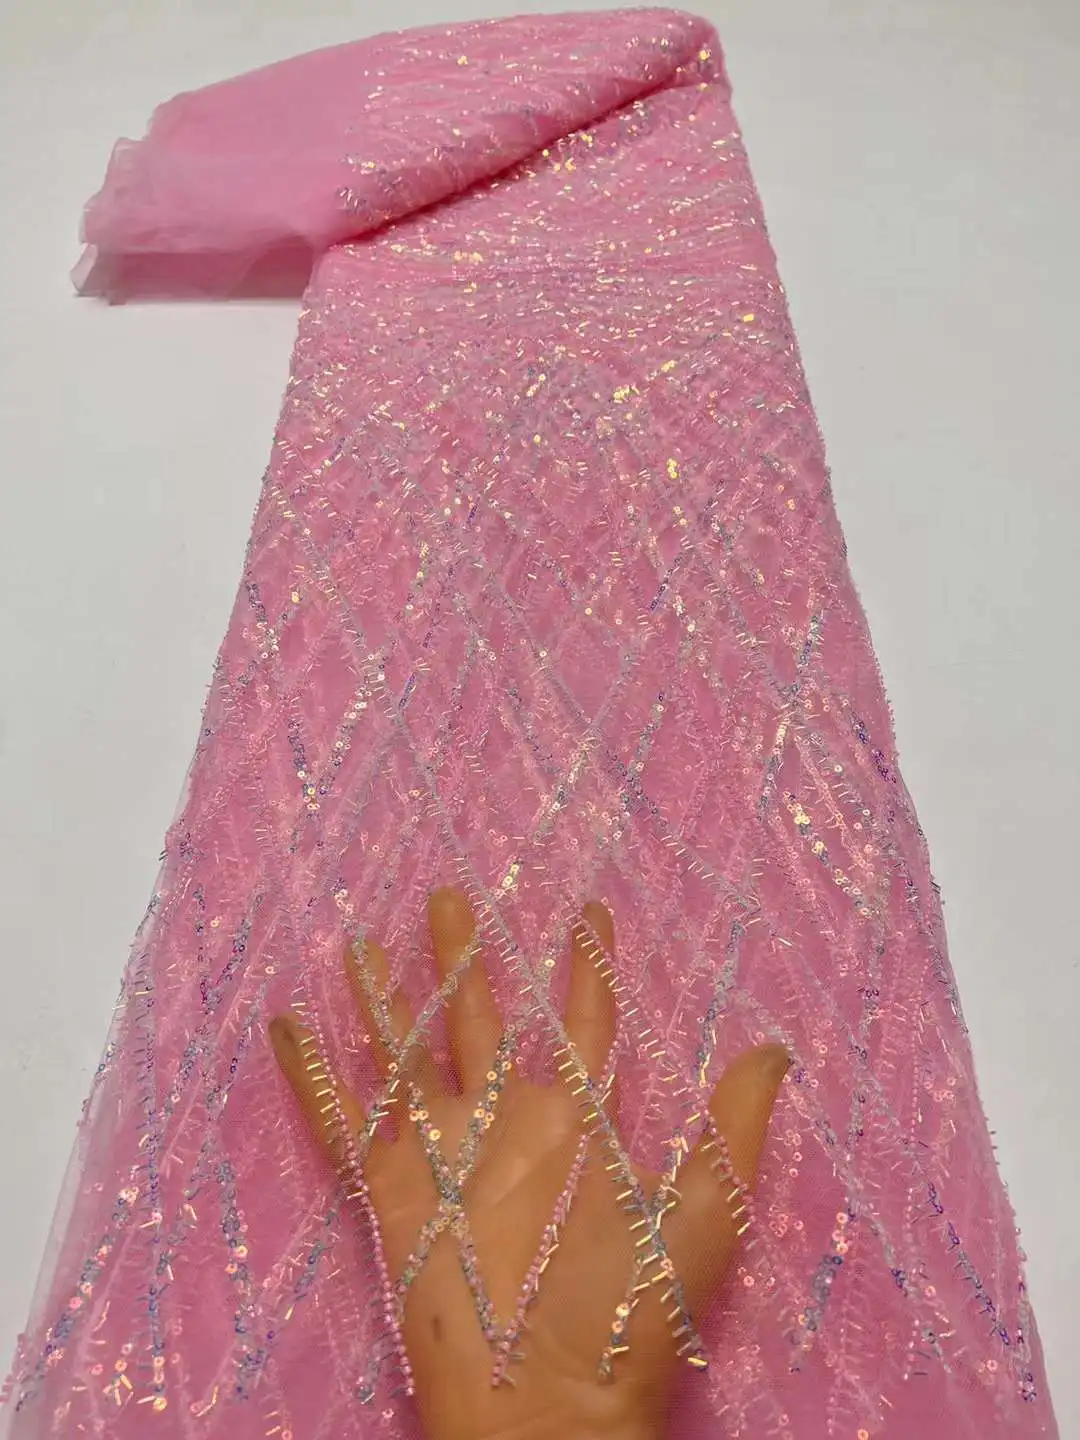 африкански тюл дантела плат розов високо качество дантела материал френски нигерийски луксозни пайети мъниста дантела плат за сватба шиене